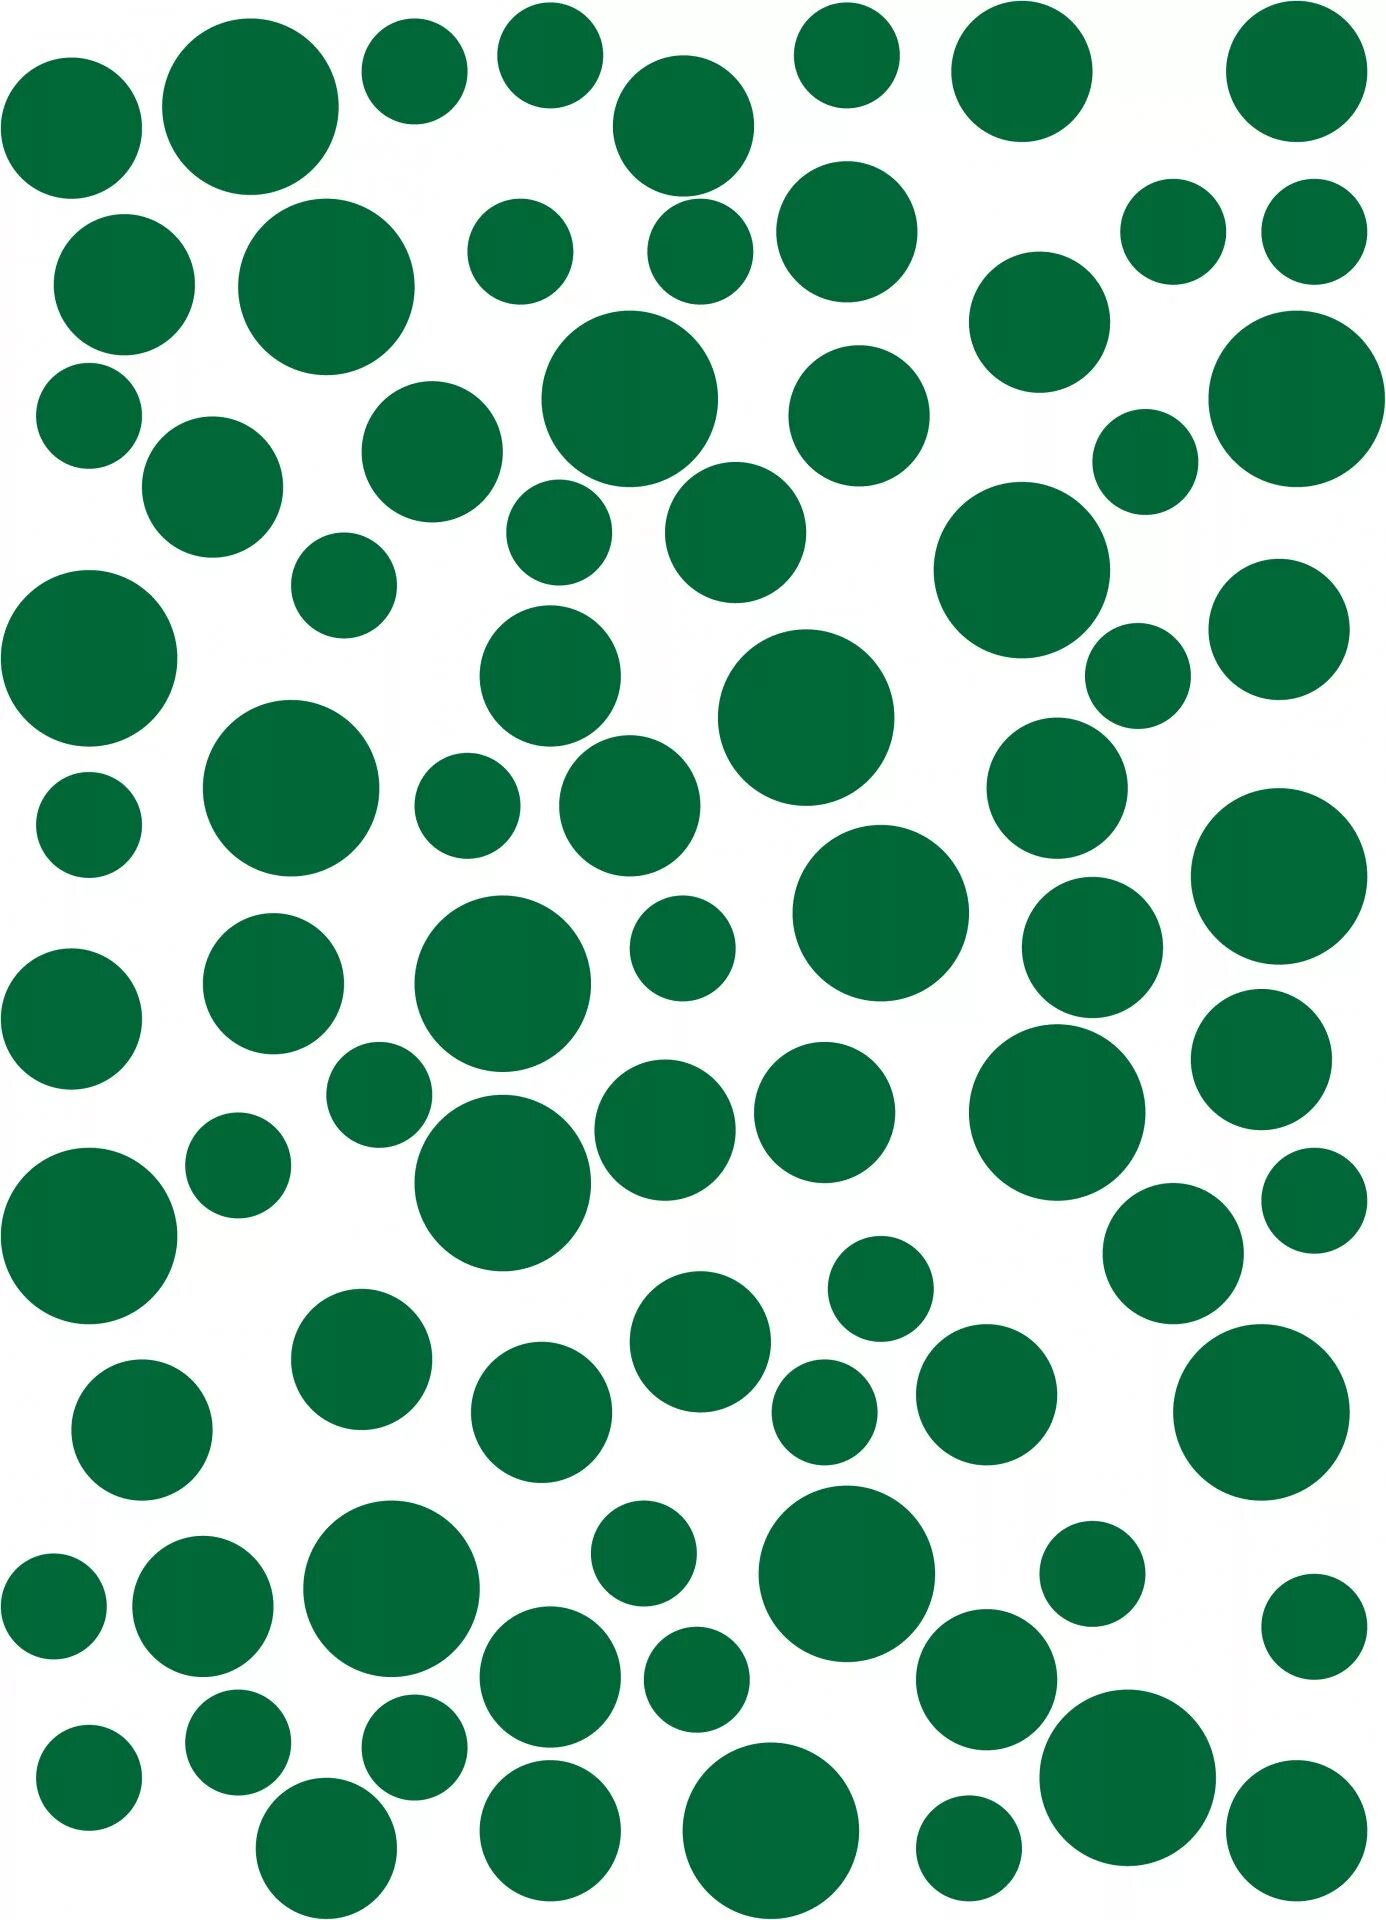 Много маленьких кружков. Зеленые кружочки. Много кружочков. Зеленые кружочки кружочки. Маленький зеленый круг.